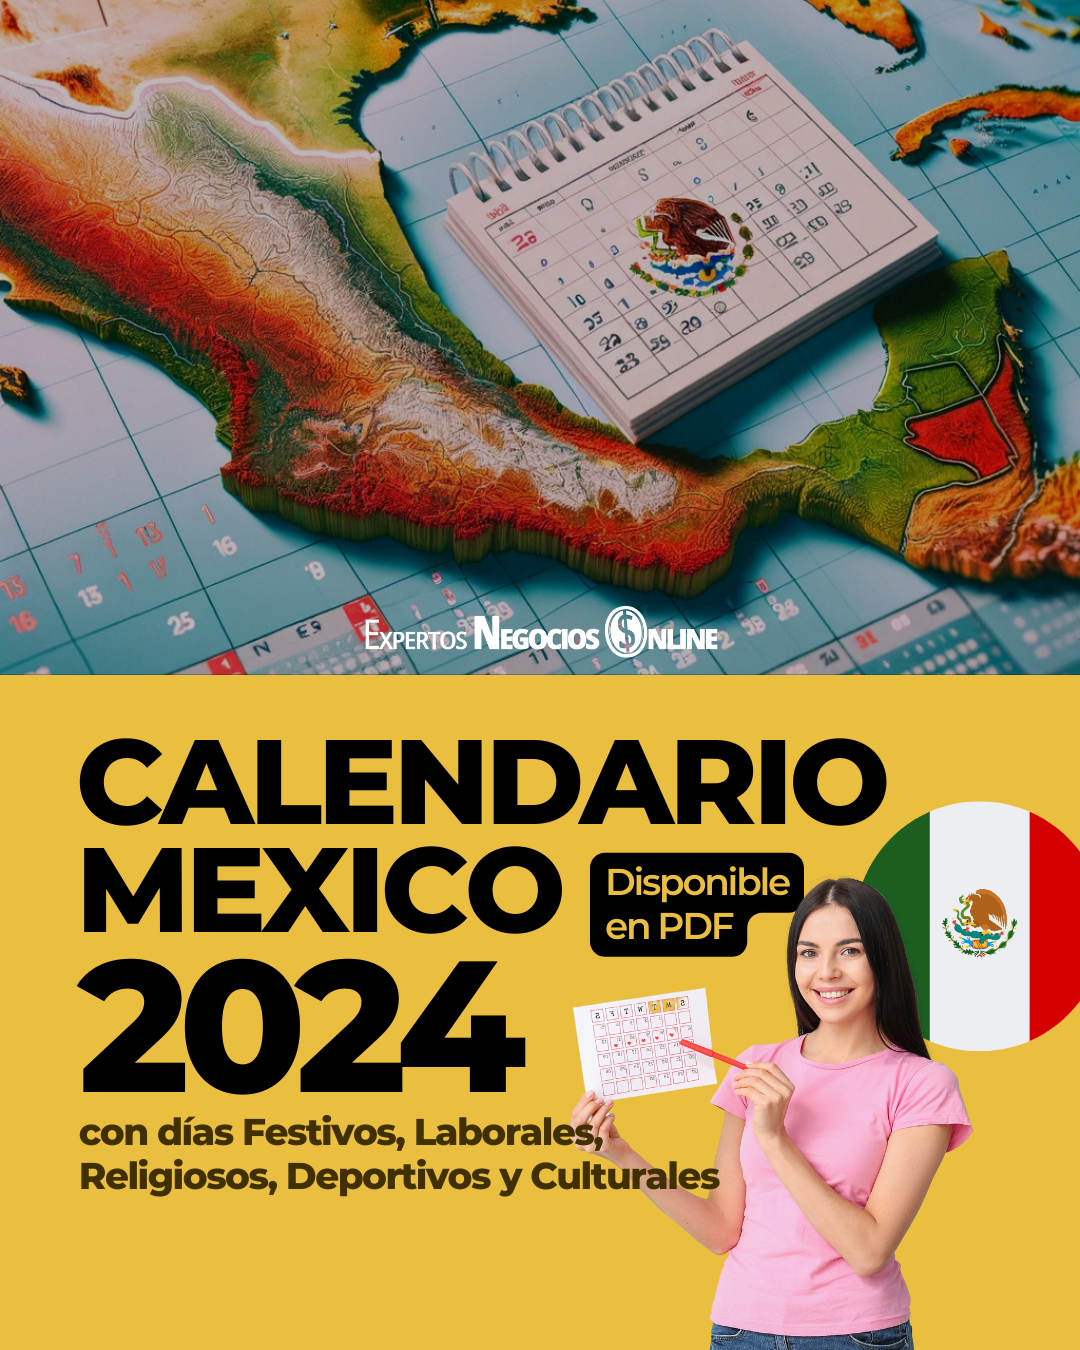 Calendario marketing Mexico 2024 | Feriados y Fechas importantes